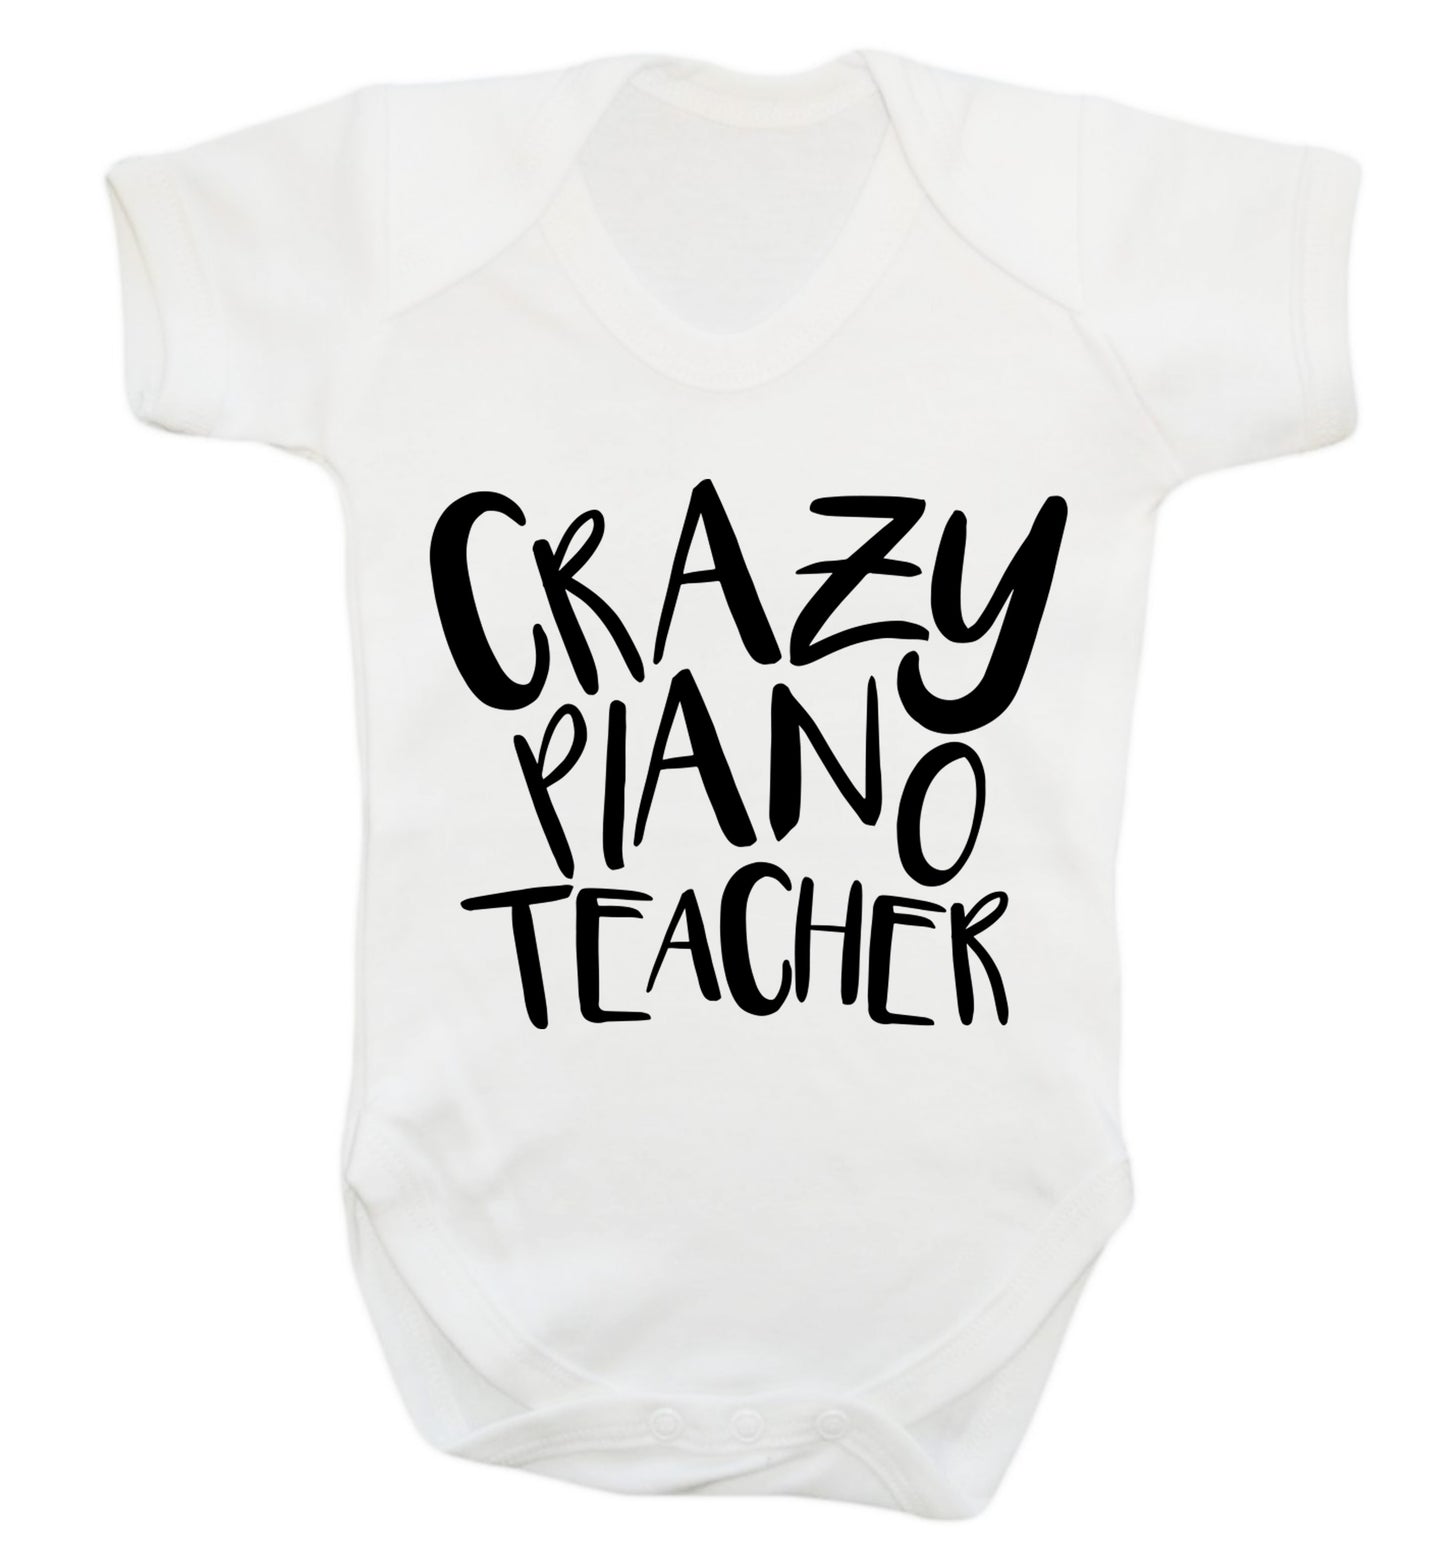 Crazy piano teacher Baby Vest white 18-24 months